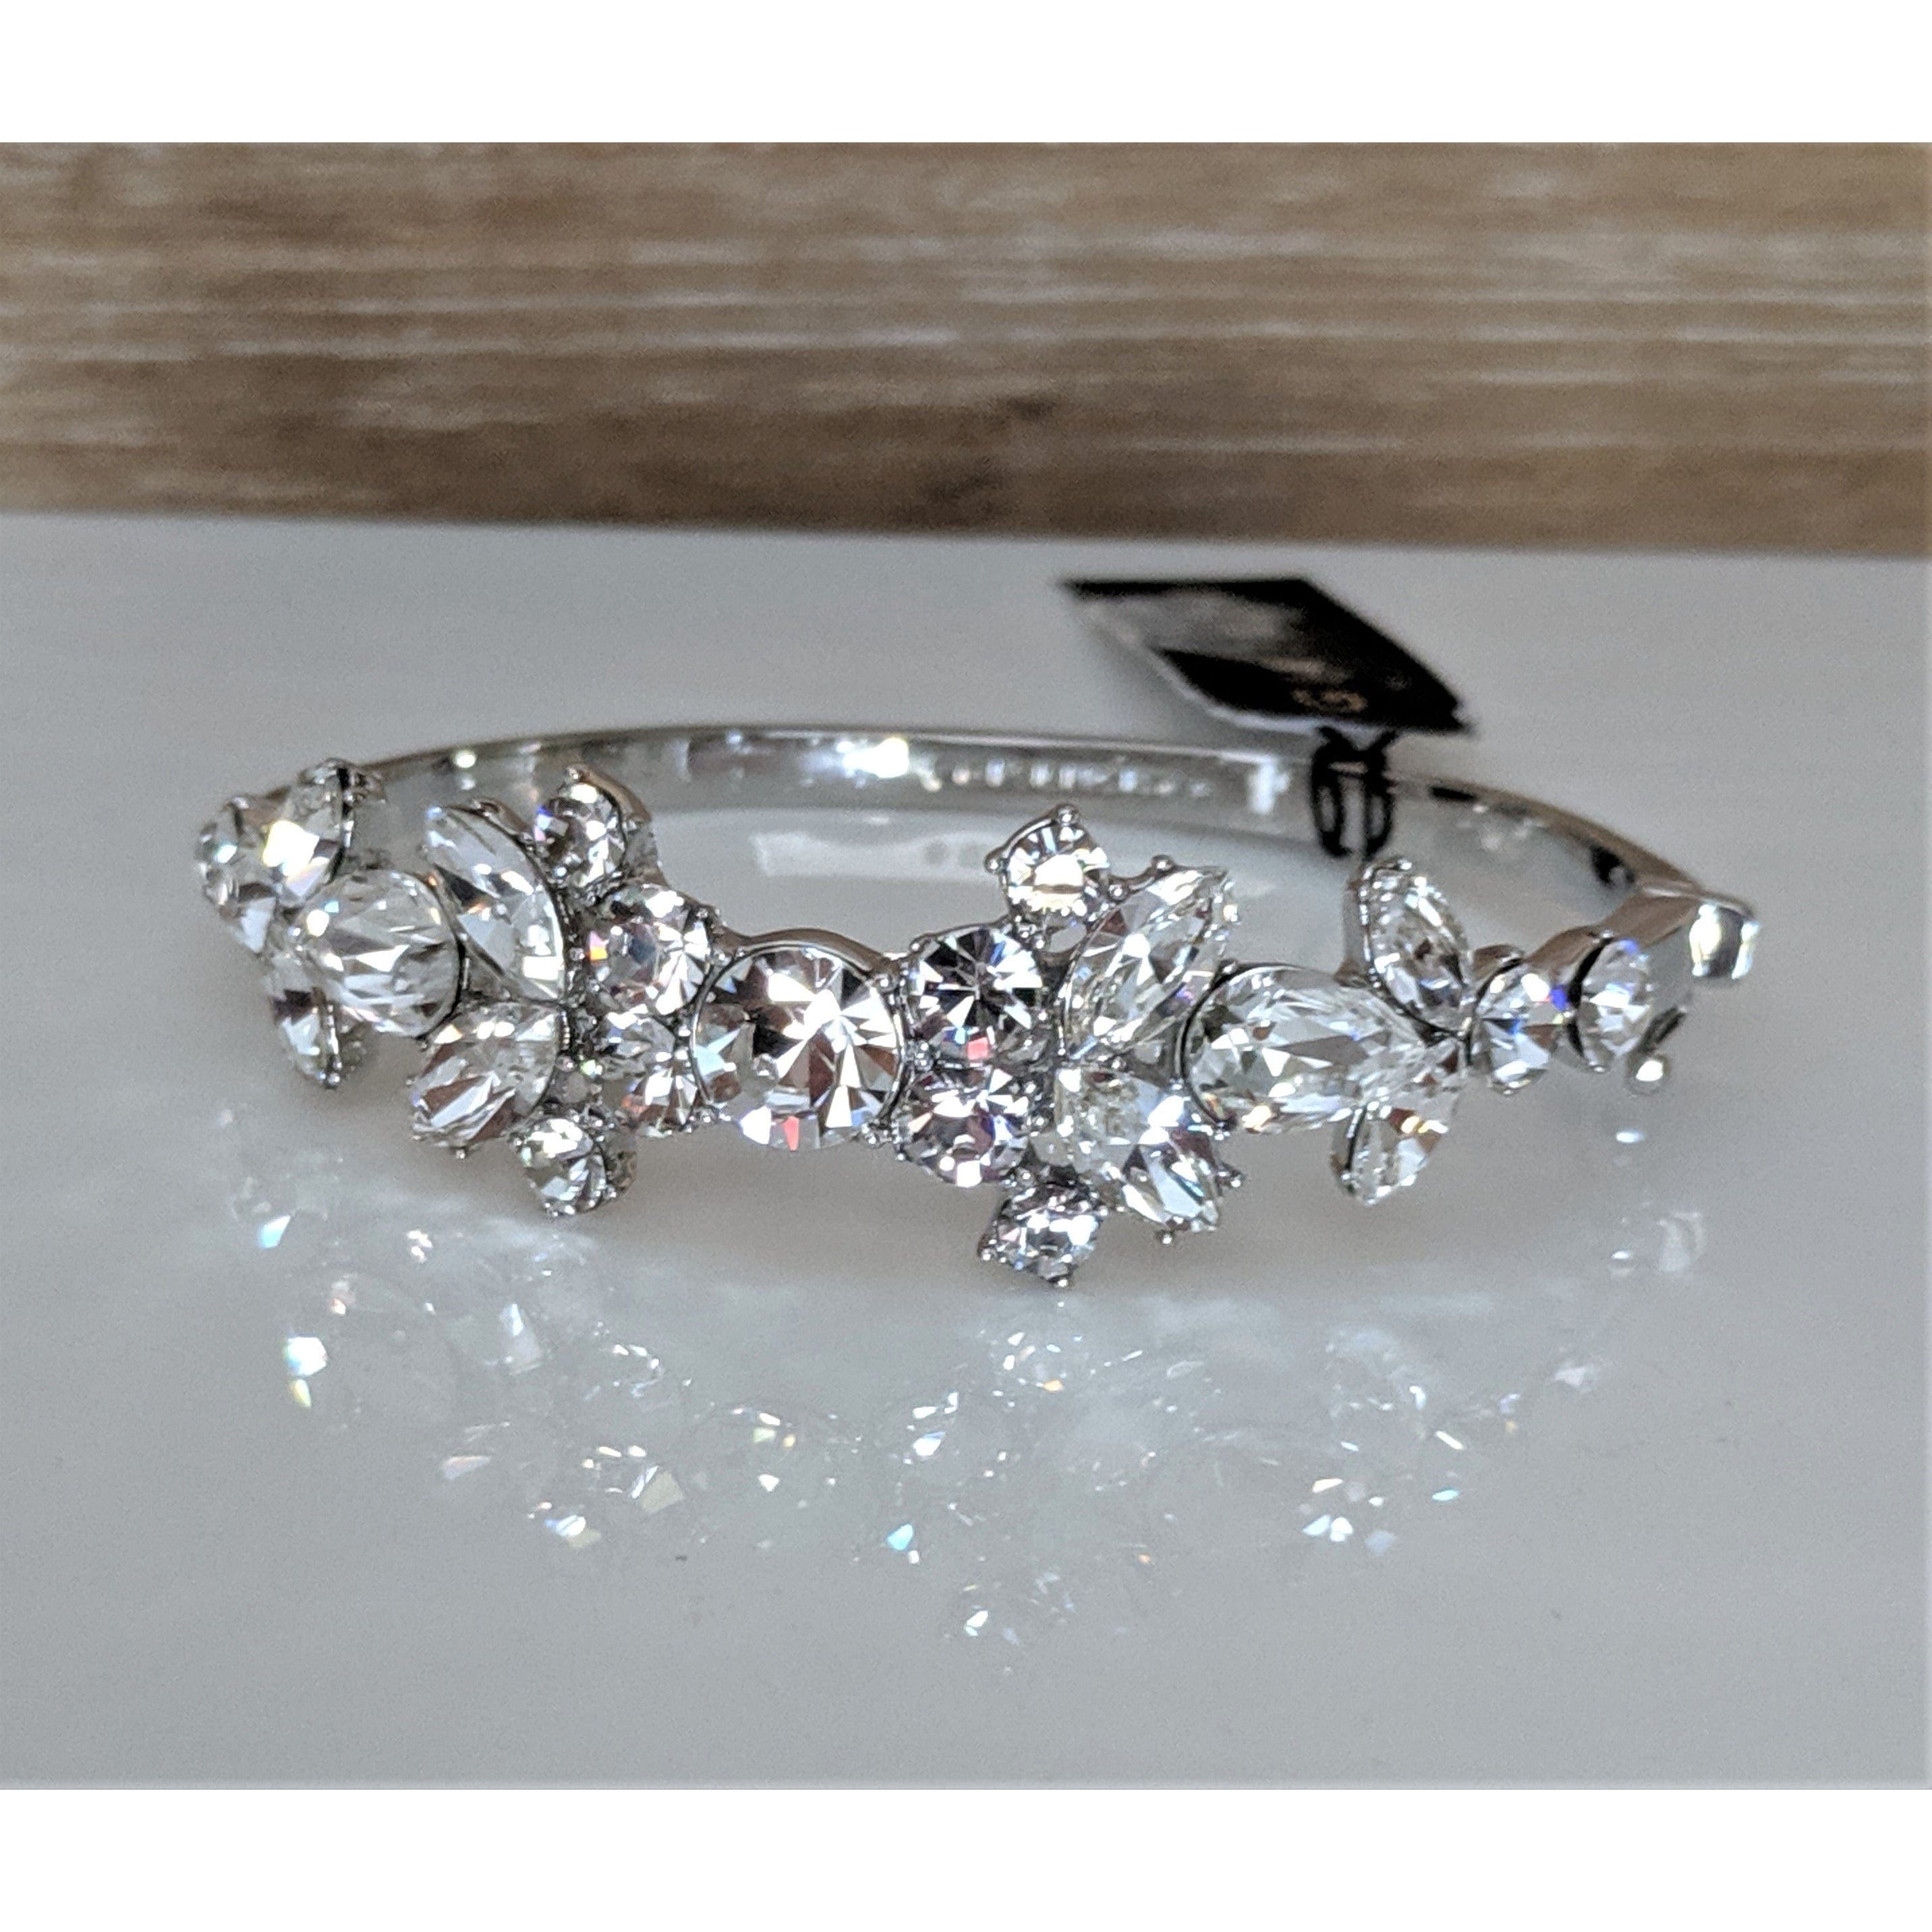 Givenchy Silver-Tone Crystal Evil Eye Bangle Bracelet - Macy's